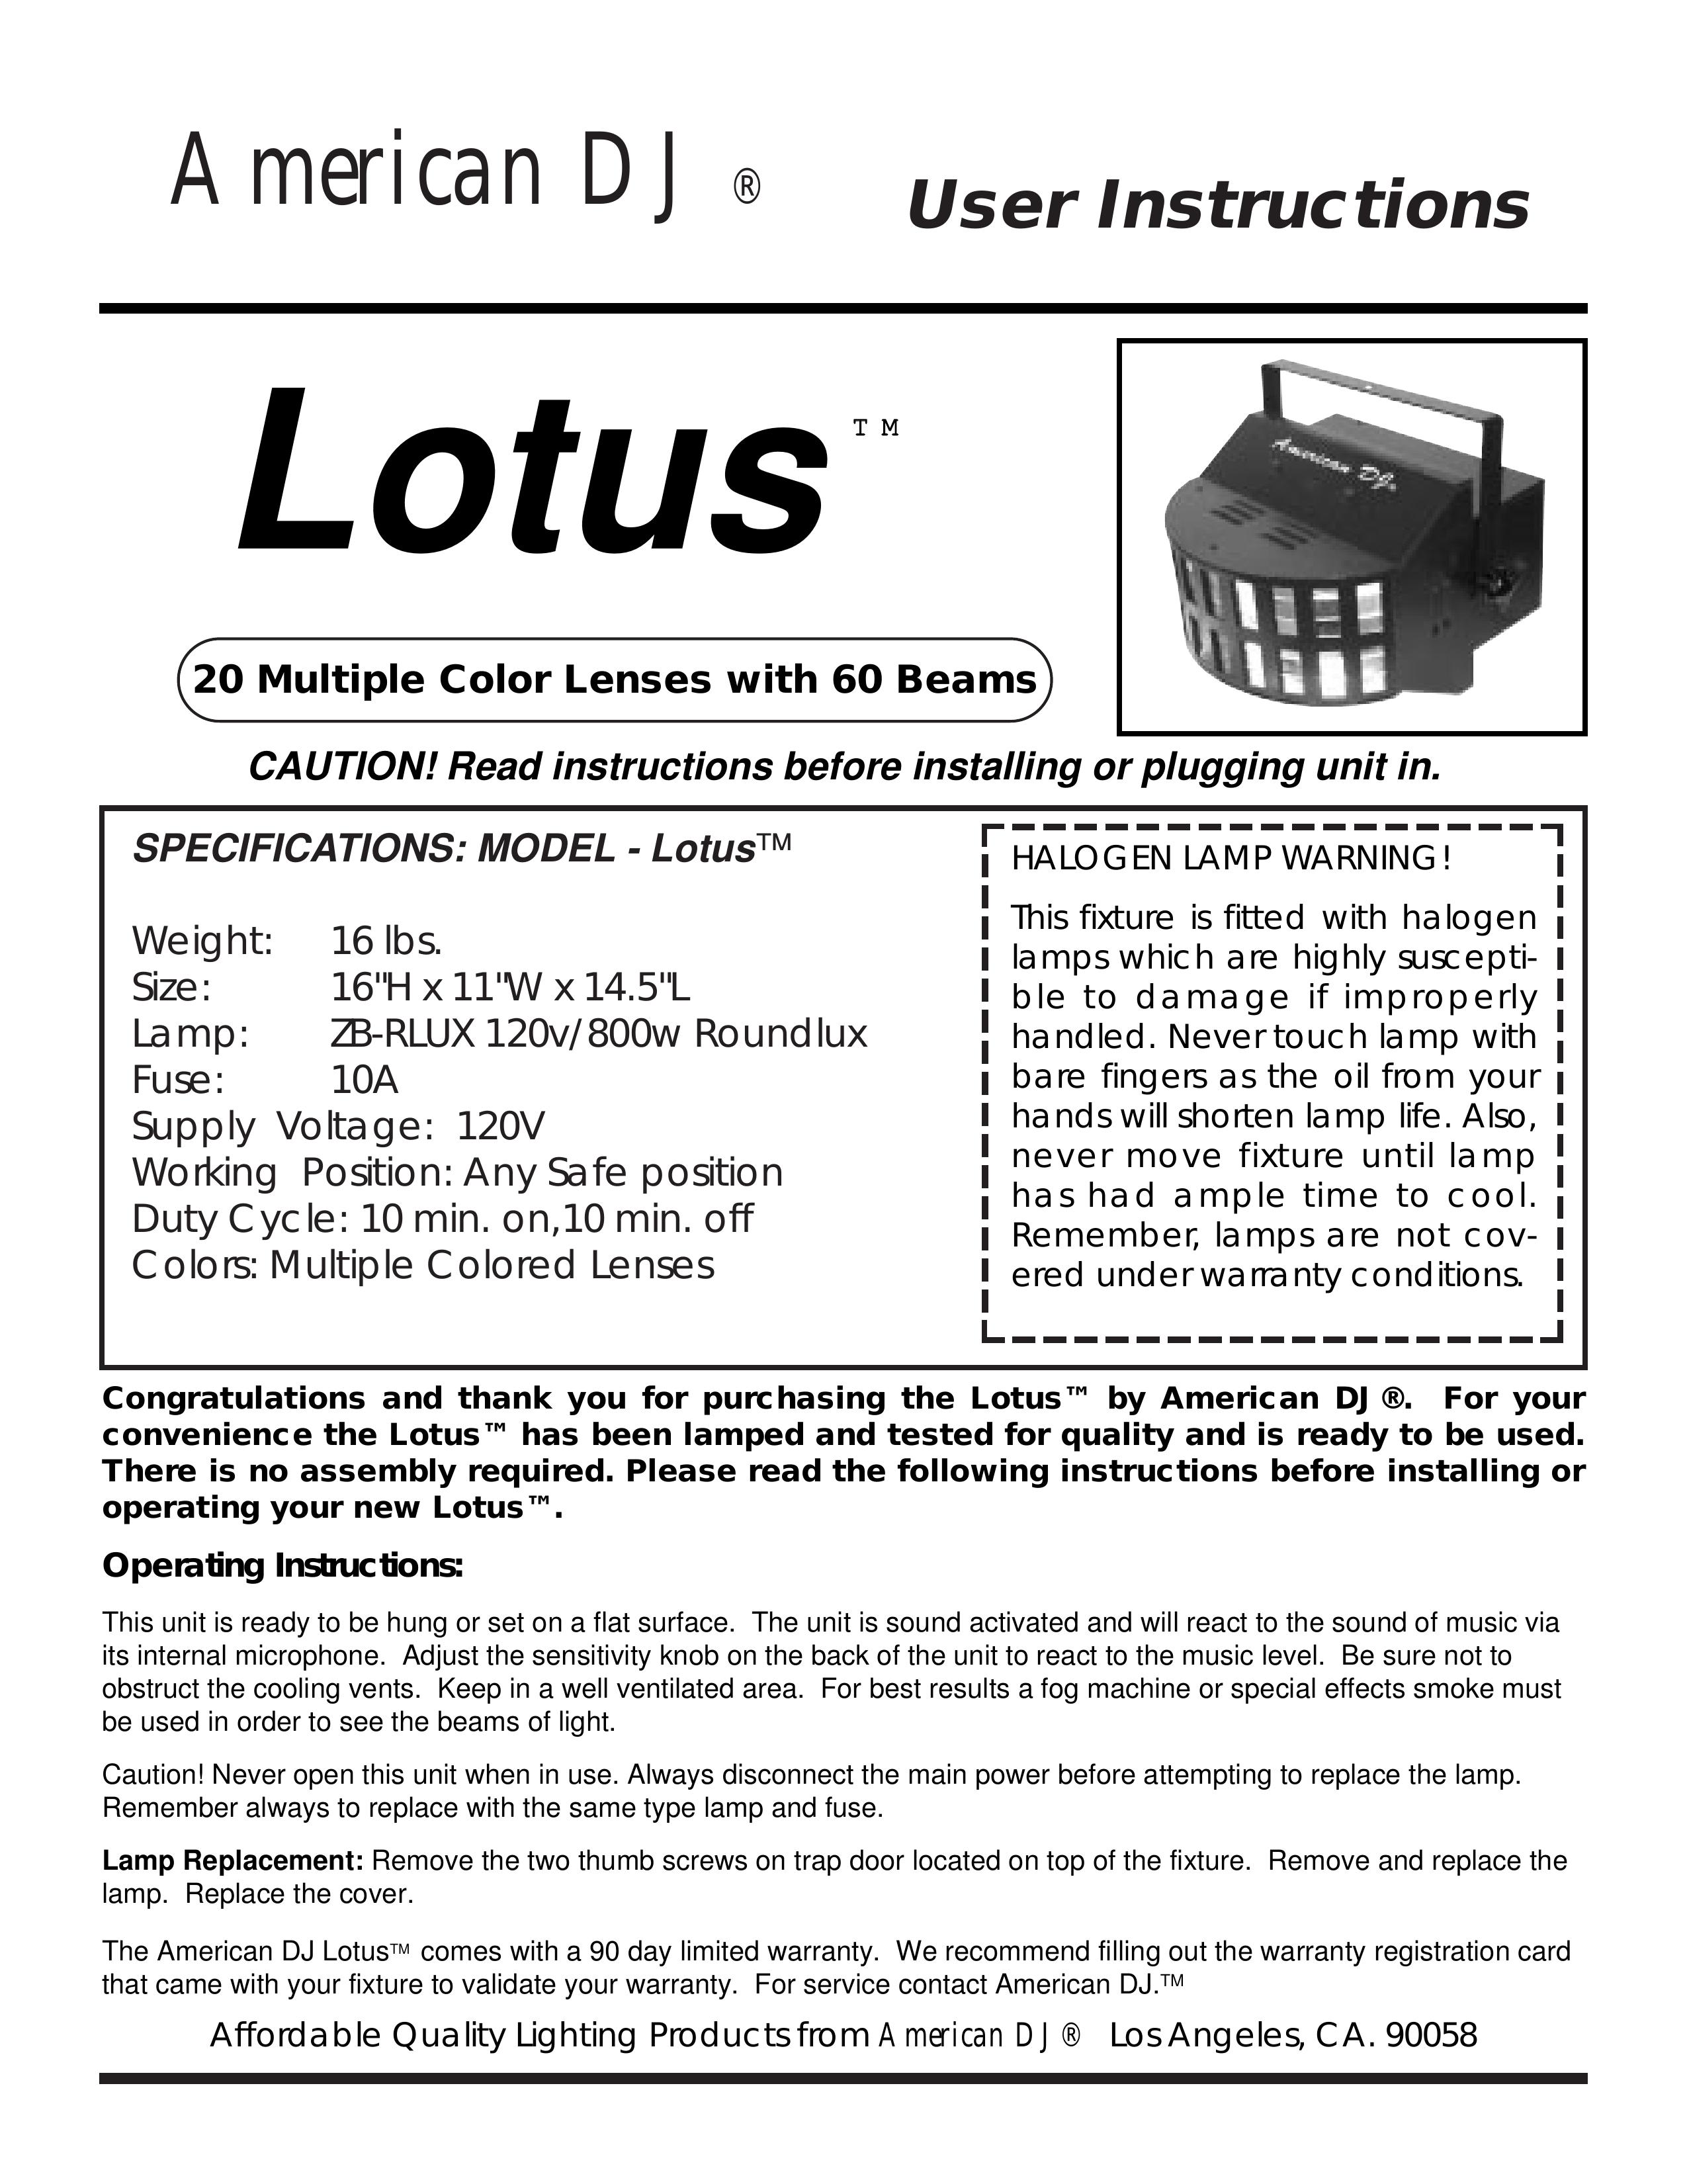 American DJ Lotus DJ Equipment User Manual